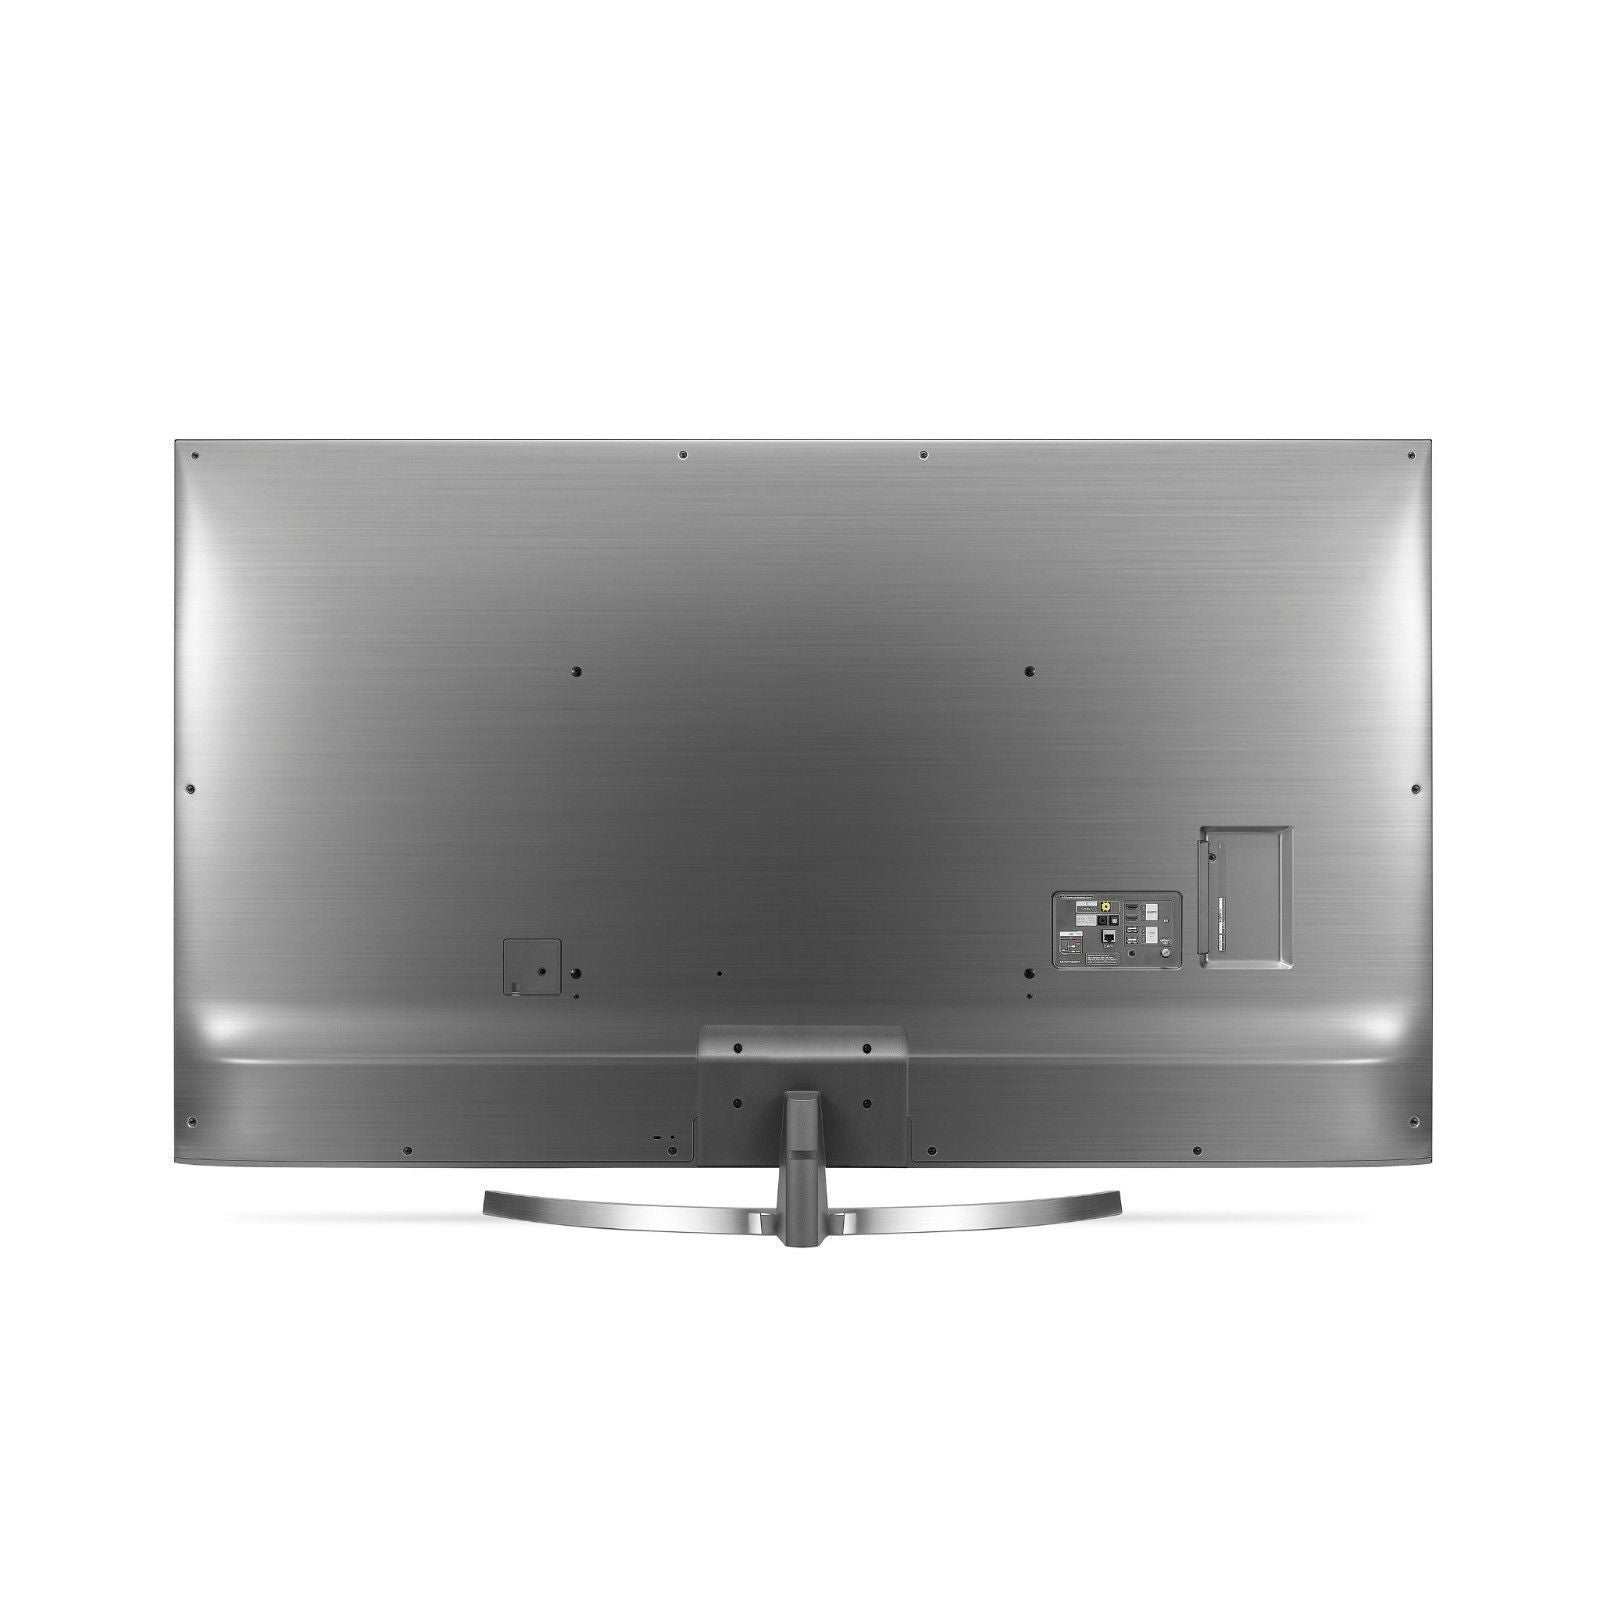 LG 75SK8070PUA 75-Inch 4K Ultra HD Smart LED TV